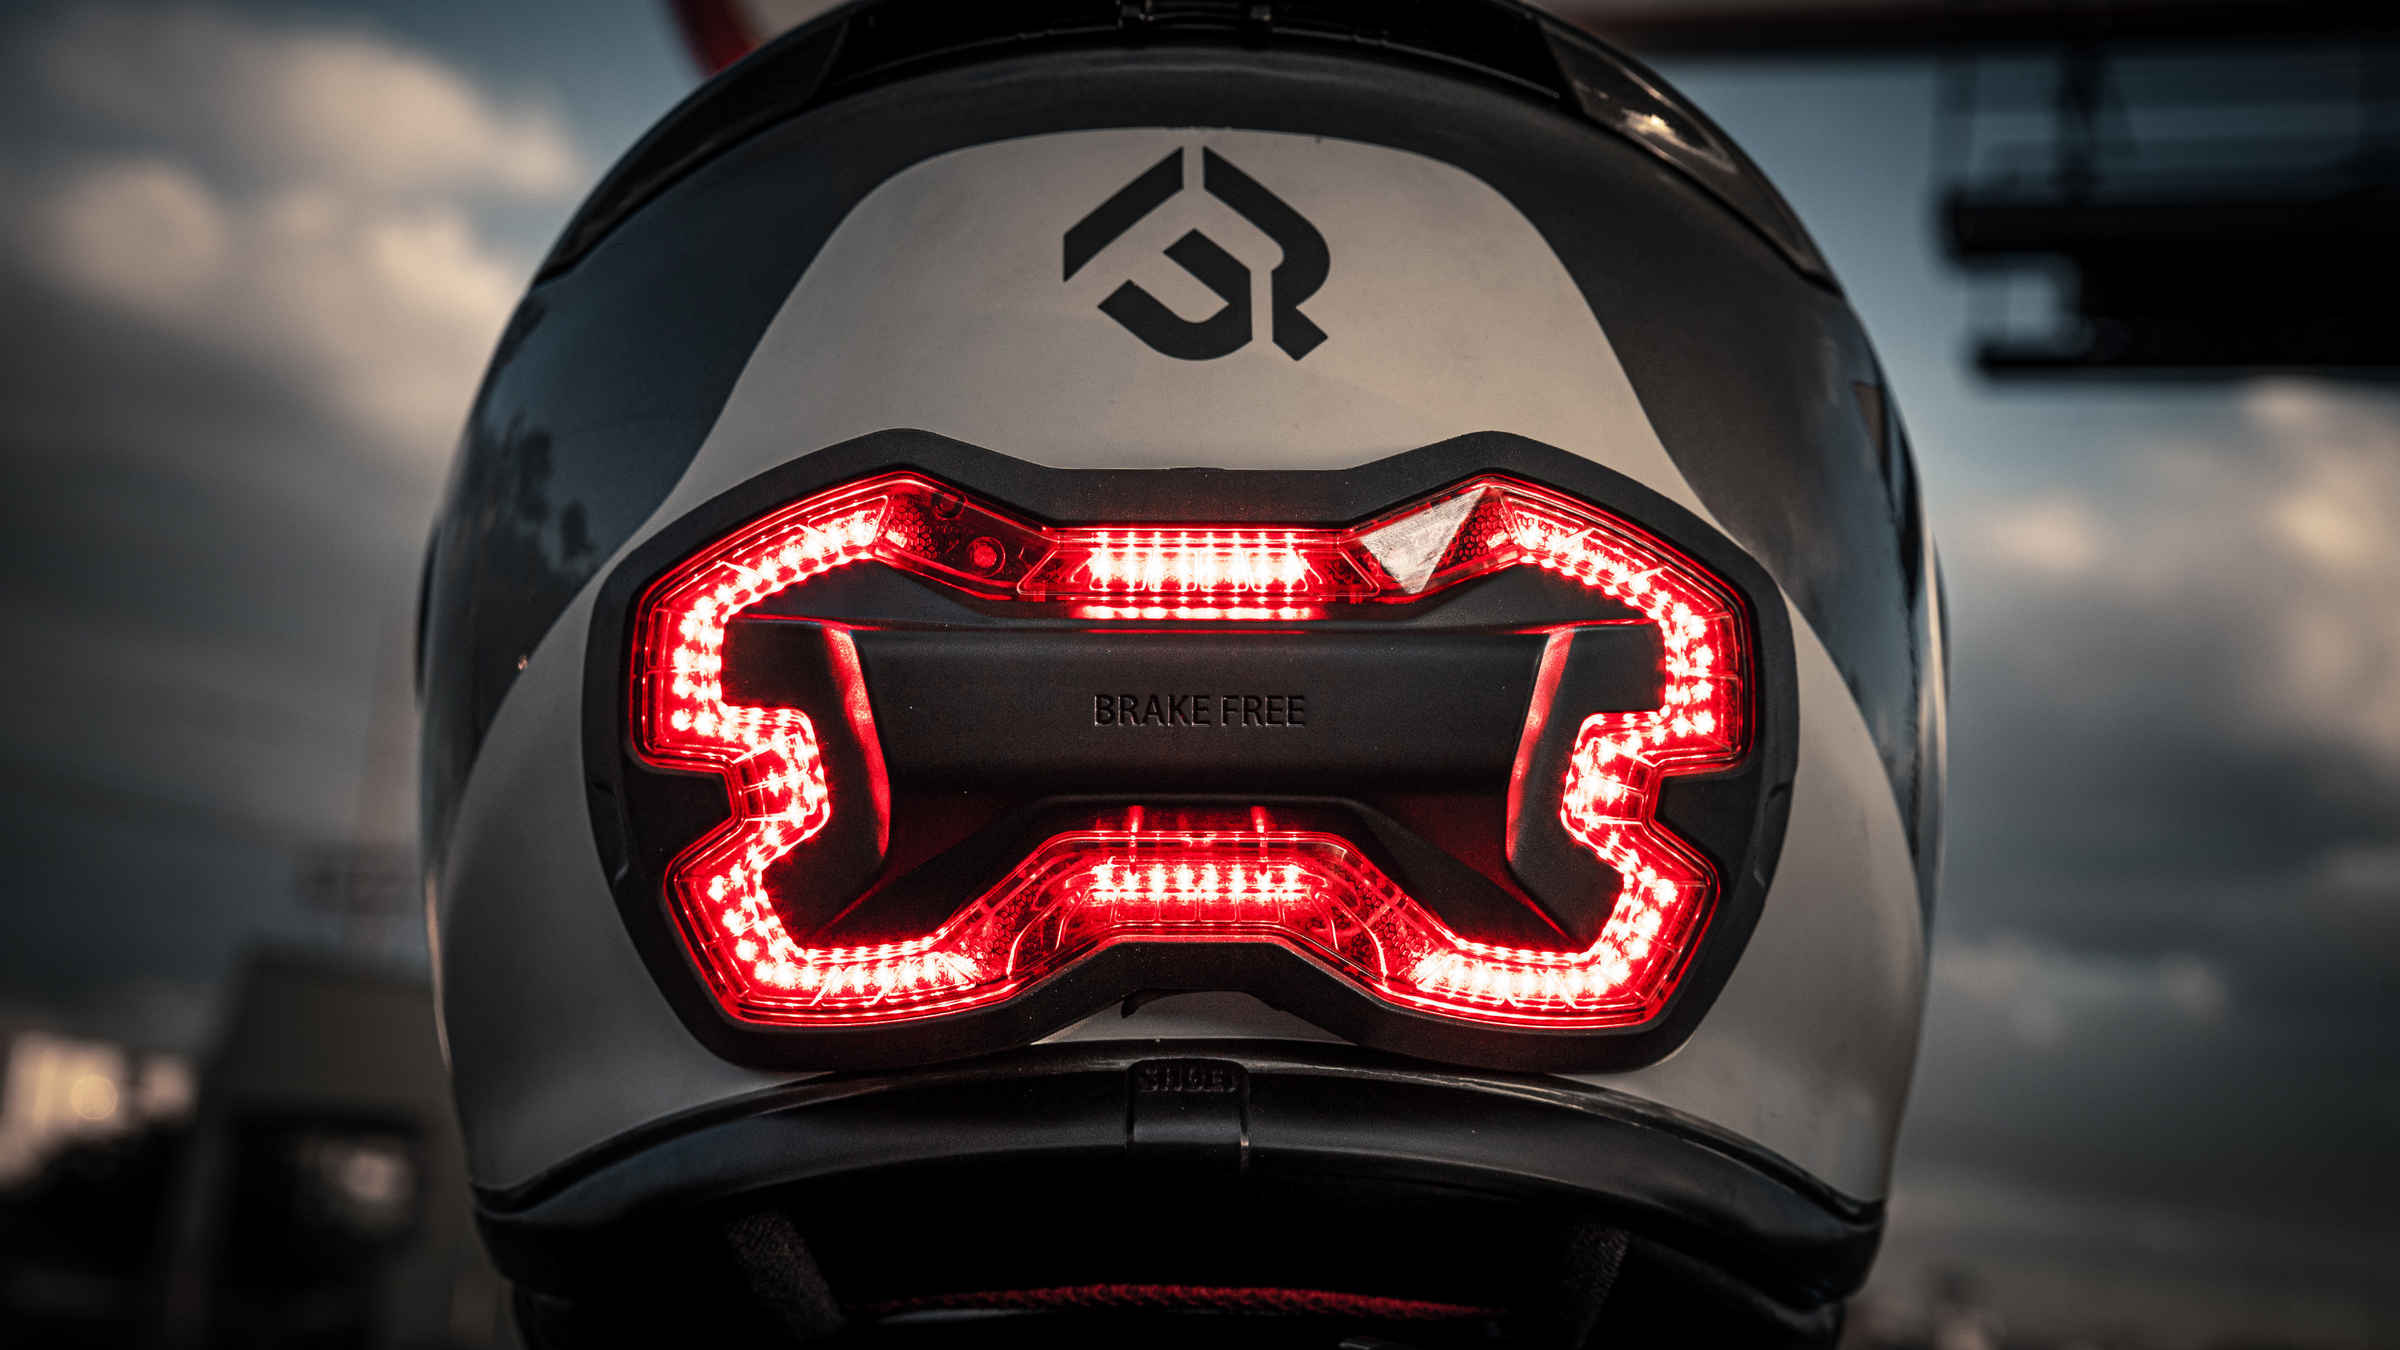 Brake Free Helmet Brake Light - wireless brake light for your motorcycle helmet